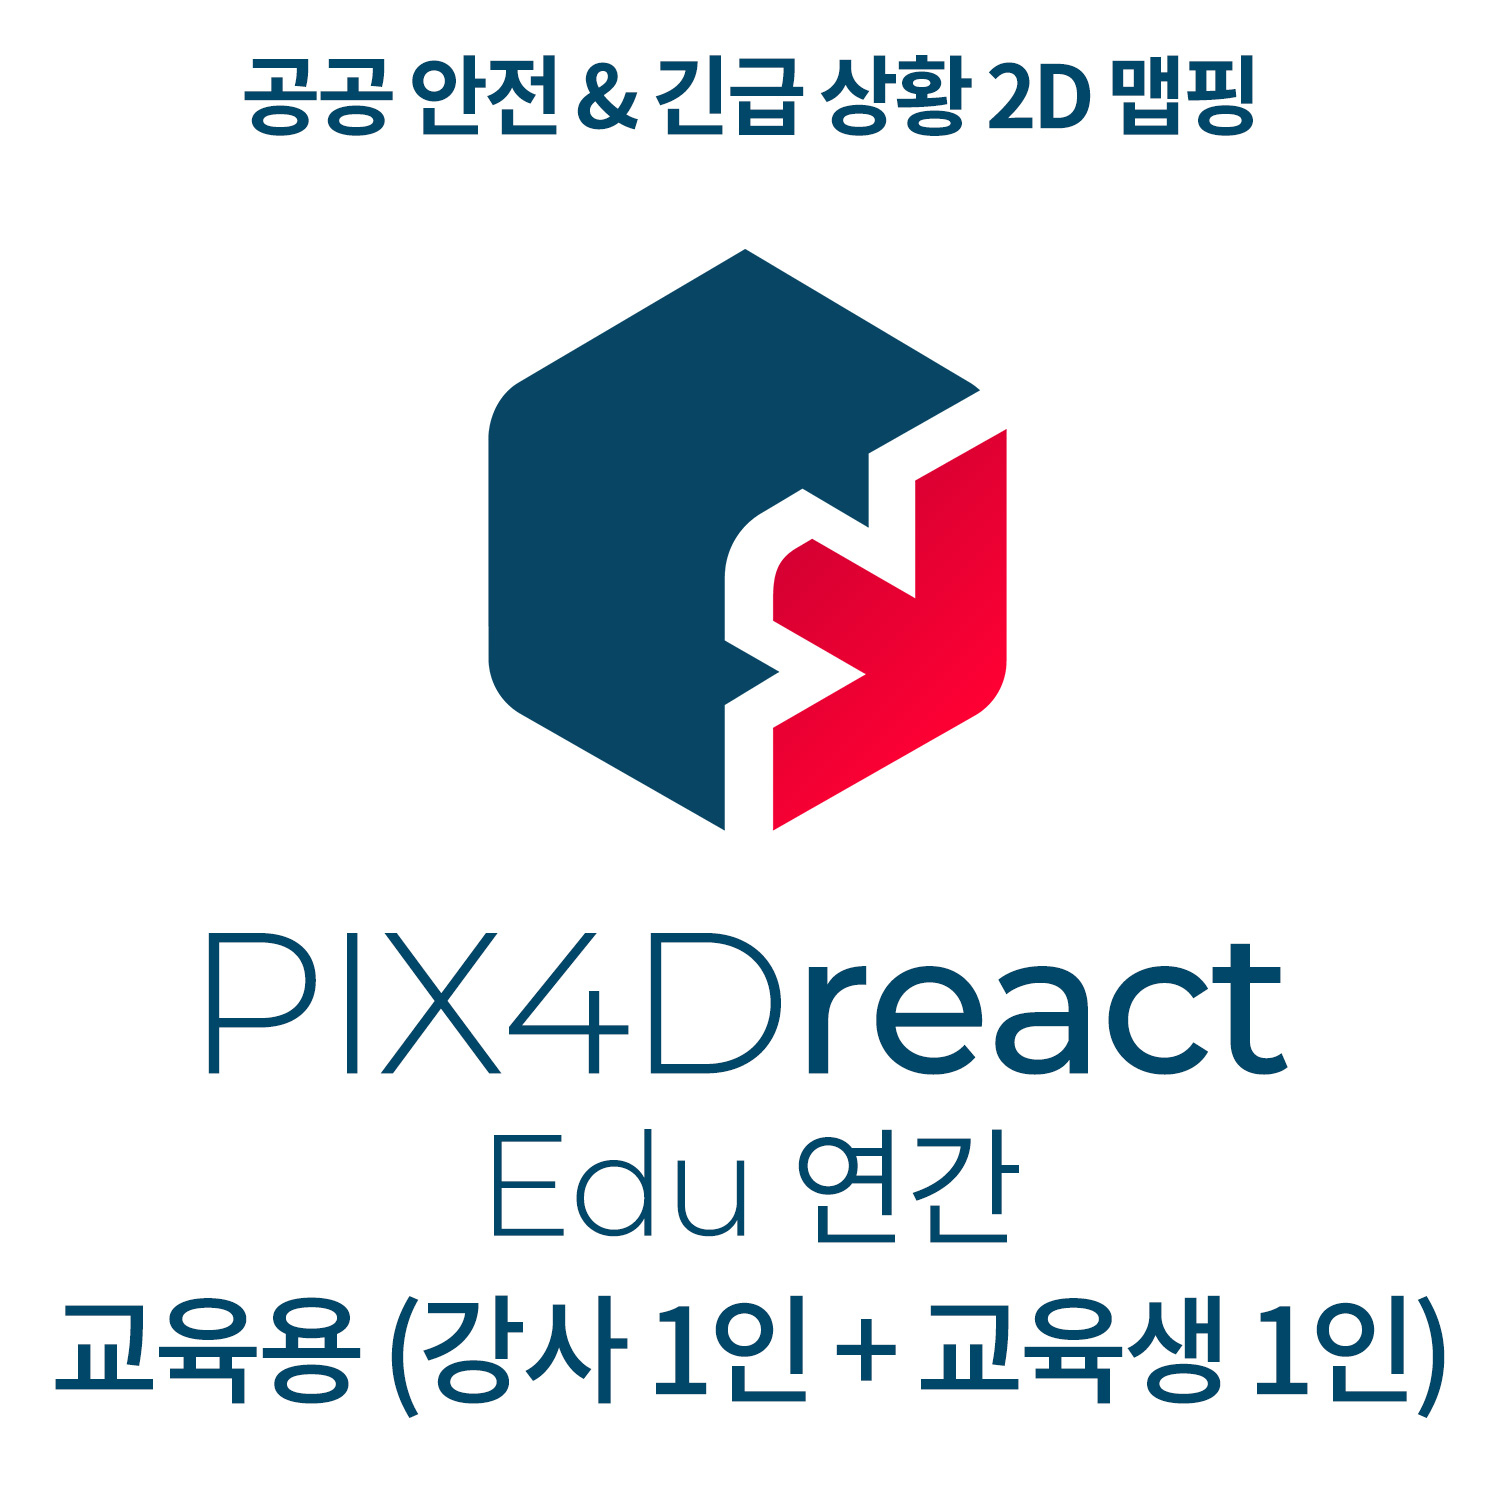 PIX4Dreact EDU교육기관-학교(강사 1인 + 교육생 1인)(연간이용) 헬셀